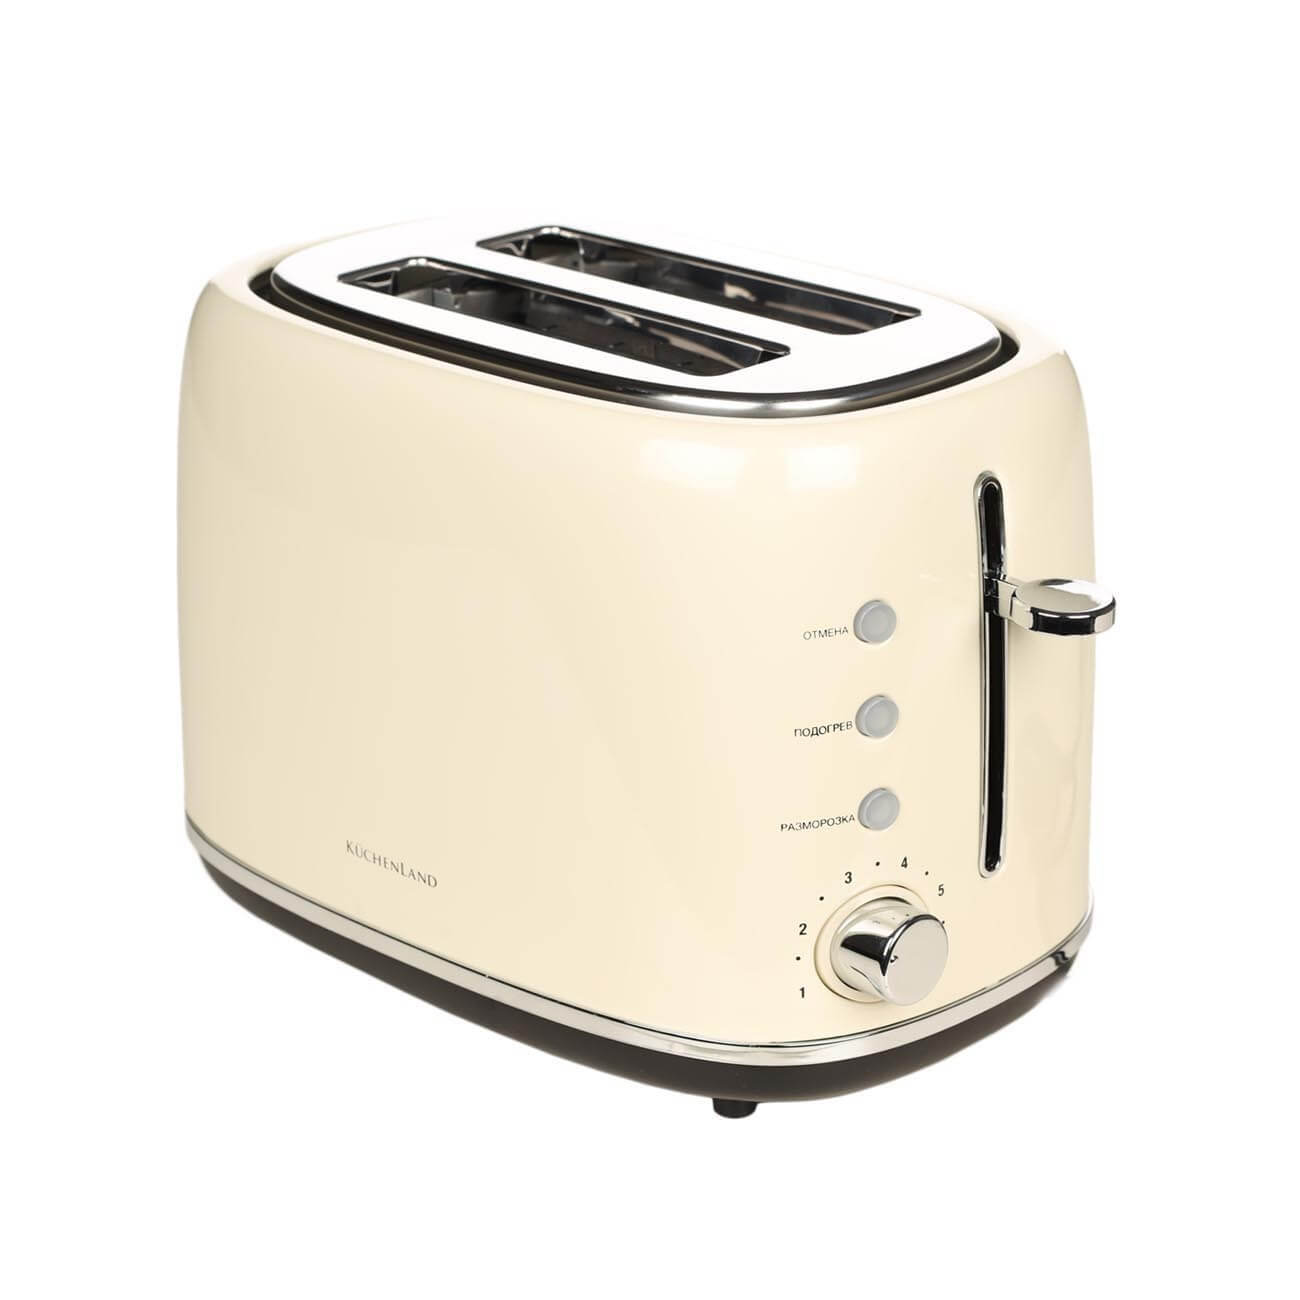 Тостер электрический, 730-870 Вт, 6 режимов, сталь/пластик, бежевый, Vintage kitchen тостер smeg tsf01creu